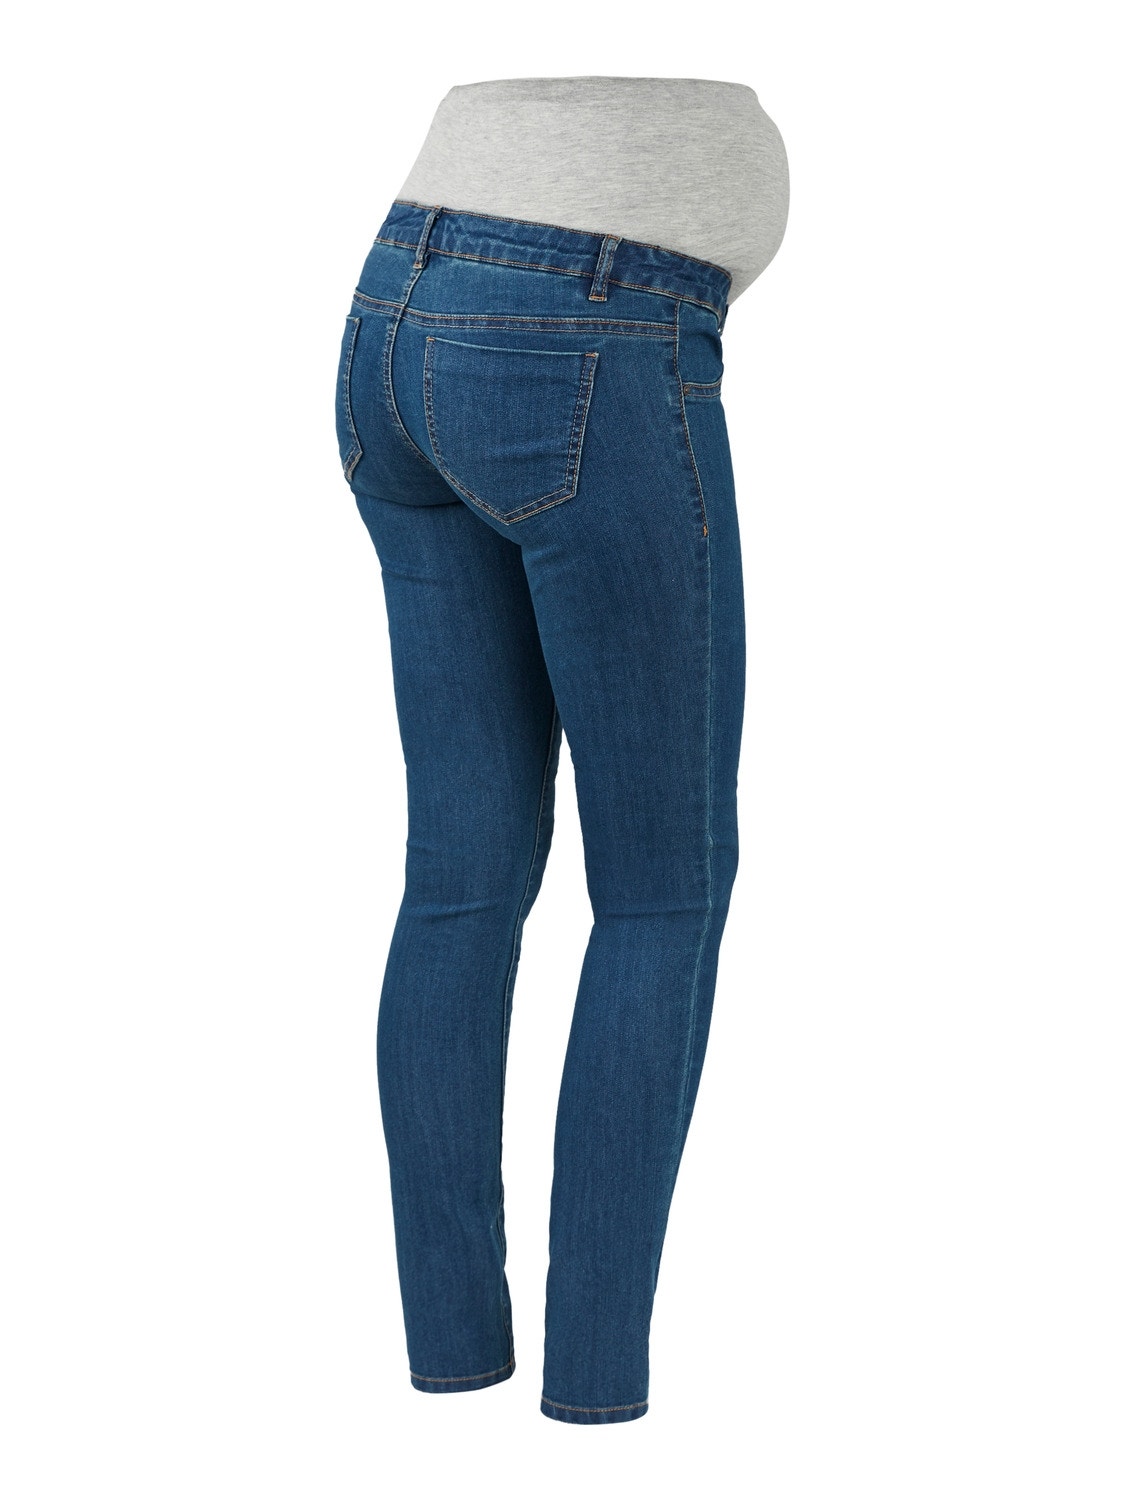 MAMA.LICIOUS Jeans Slim Fit -Medium Blue Denim - 20011908